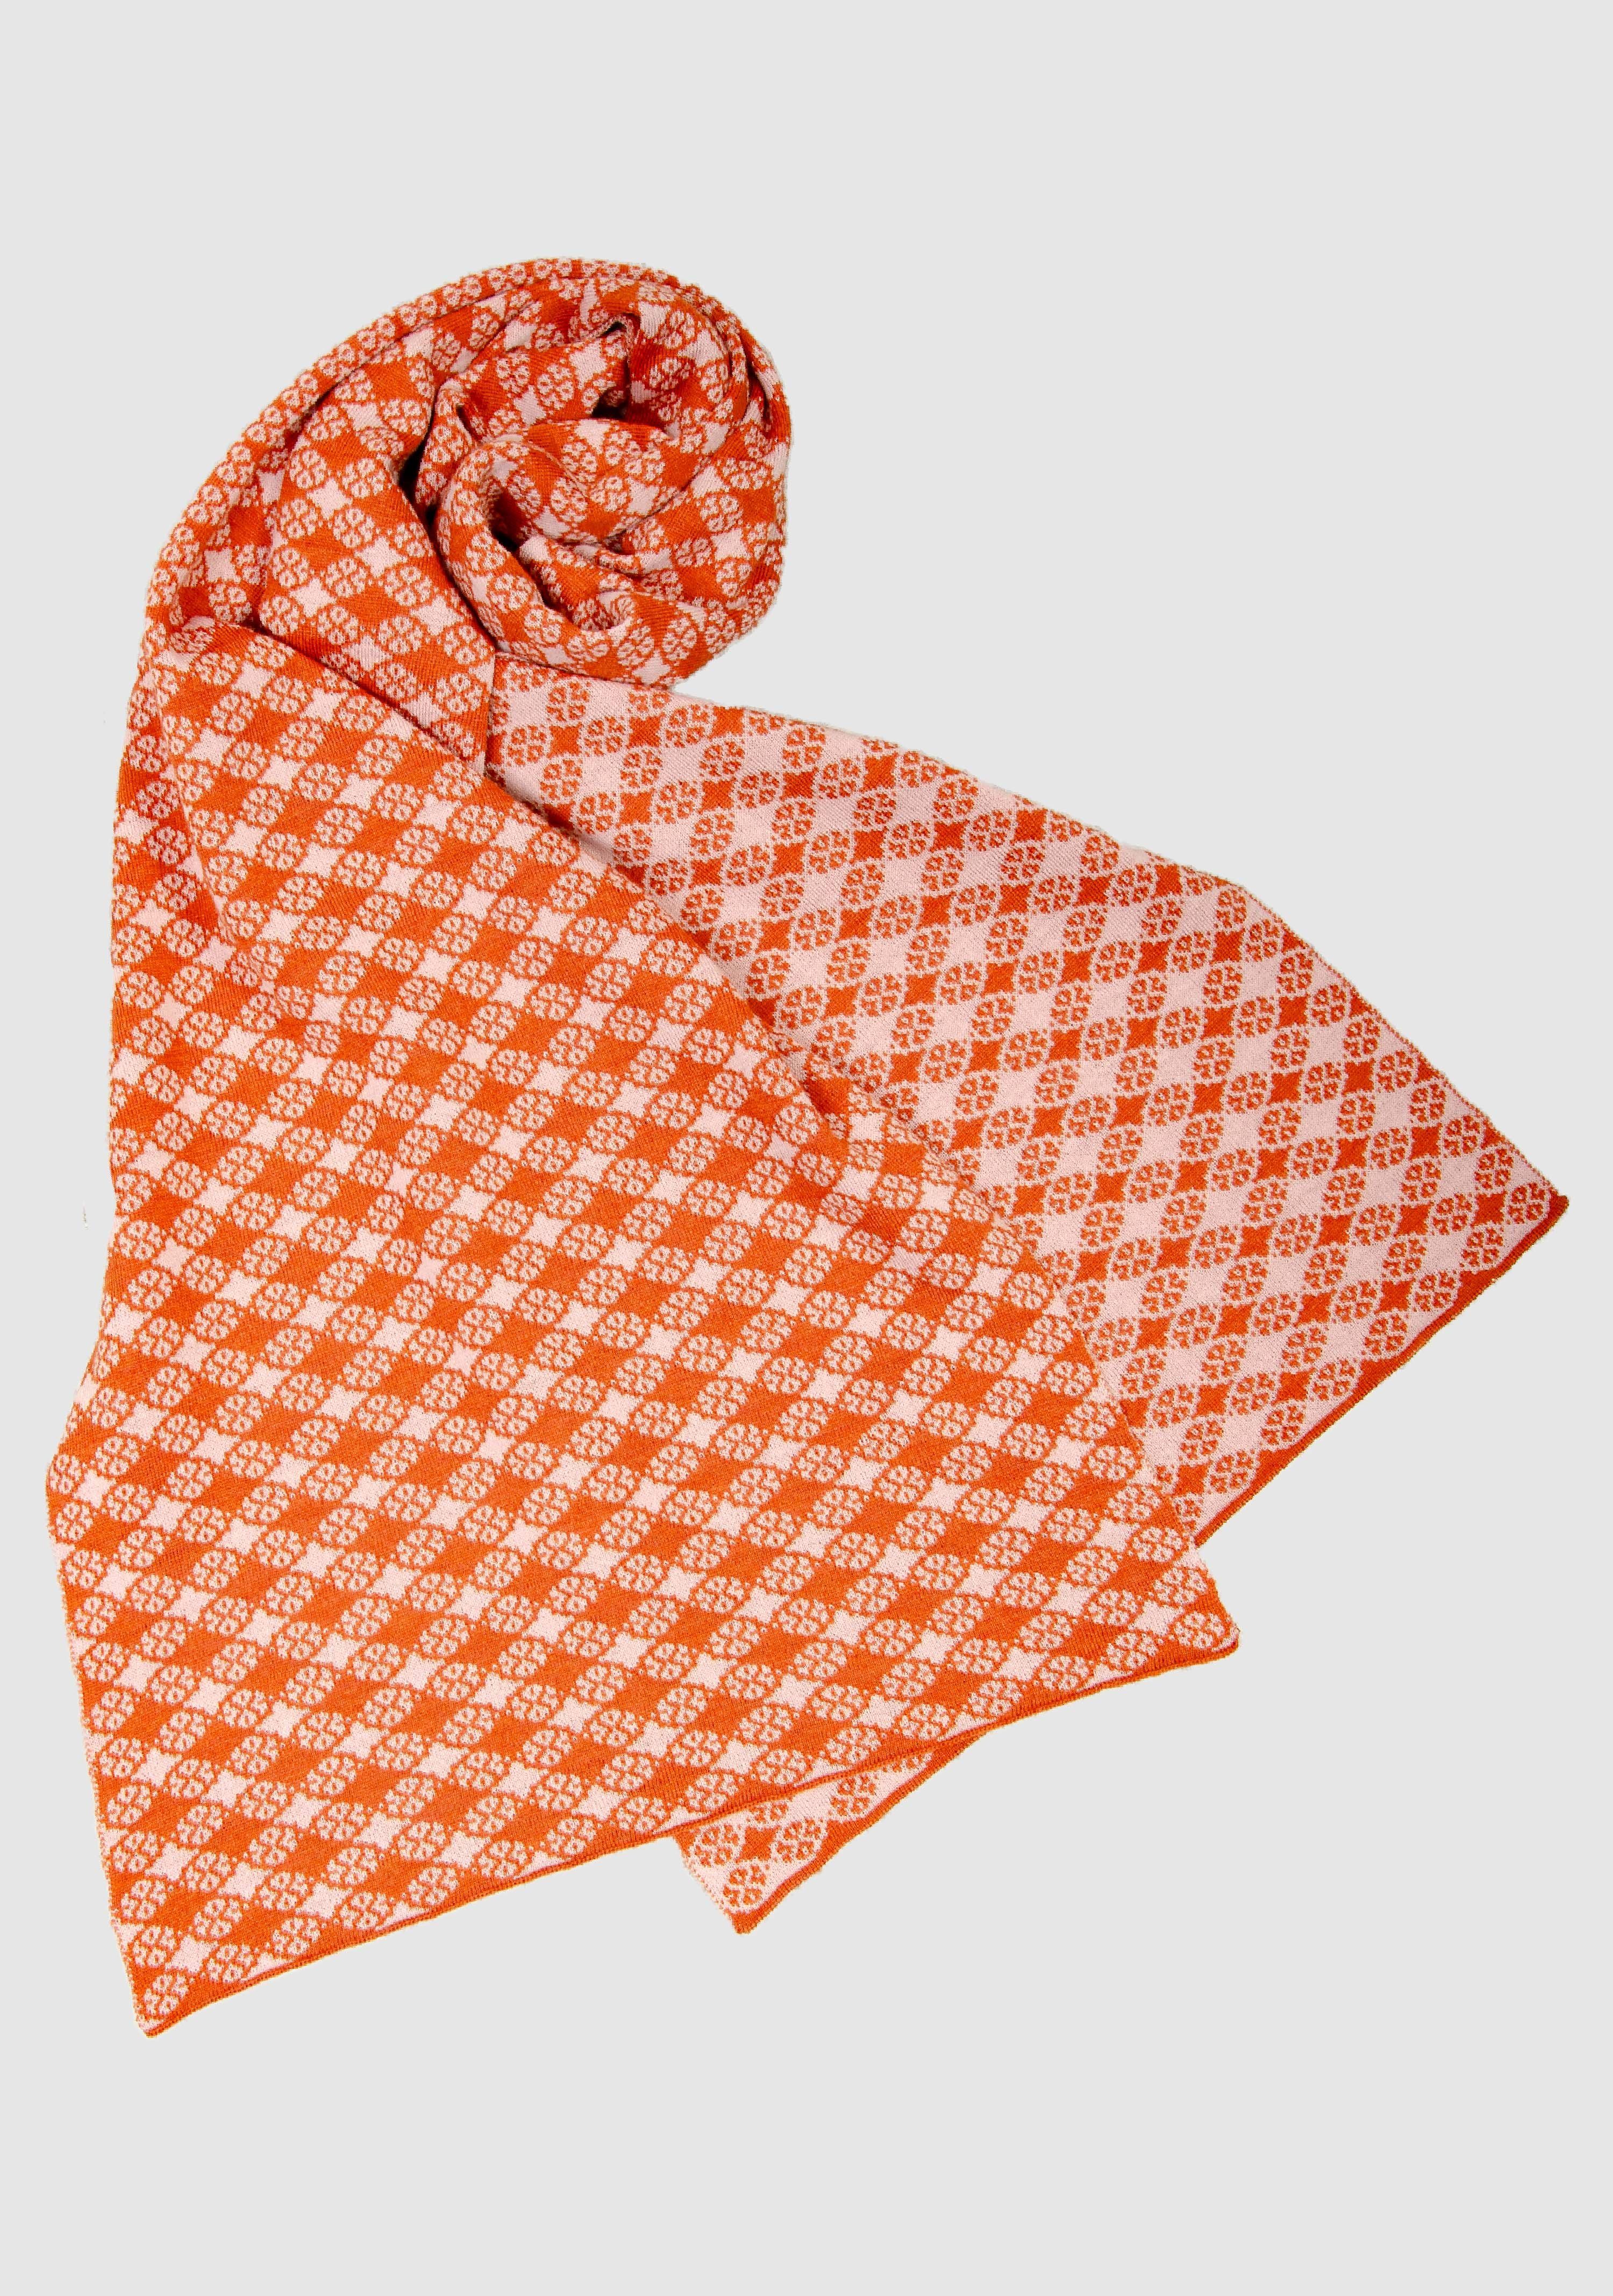 in schönen Farben slow LANARTO orange_rosa Schal Merino 100% Wollschal fashion extrasoft Blütenkaro